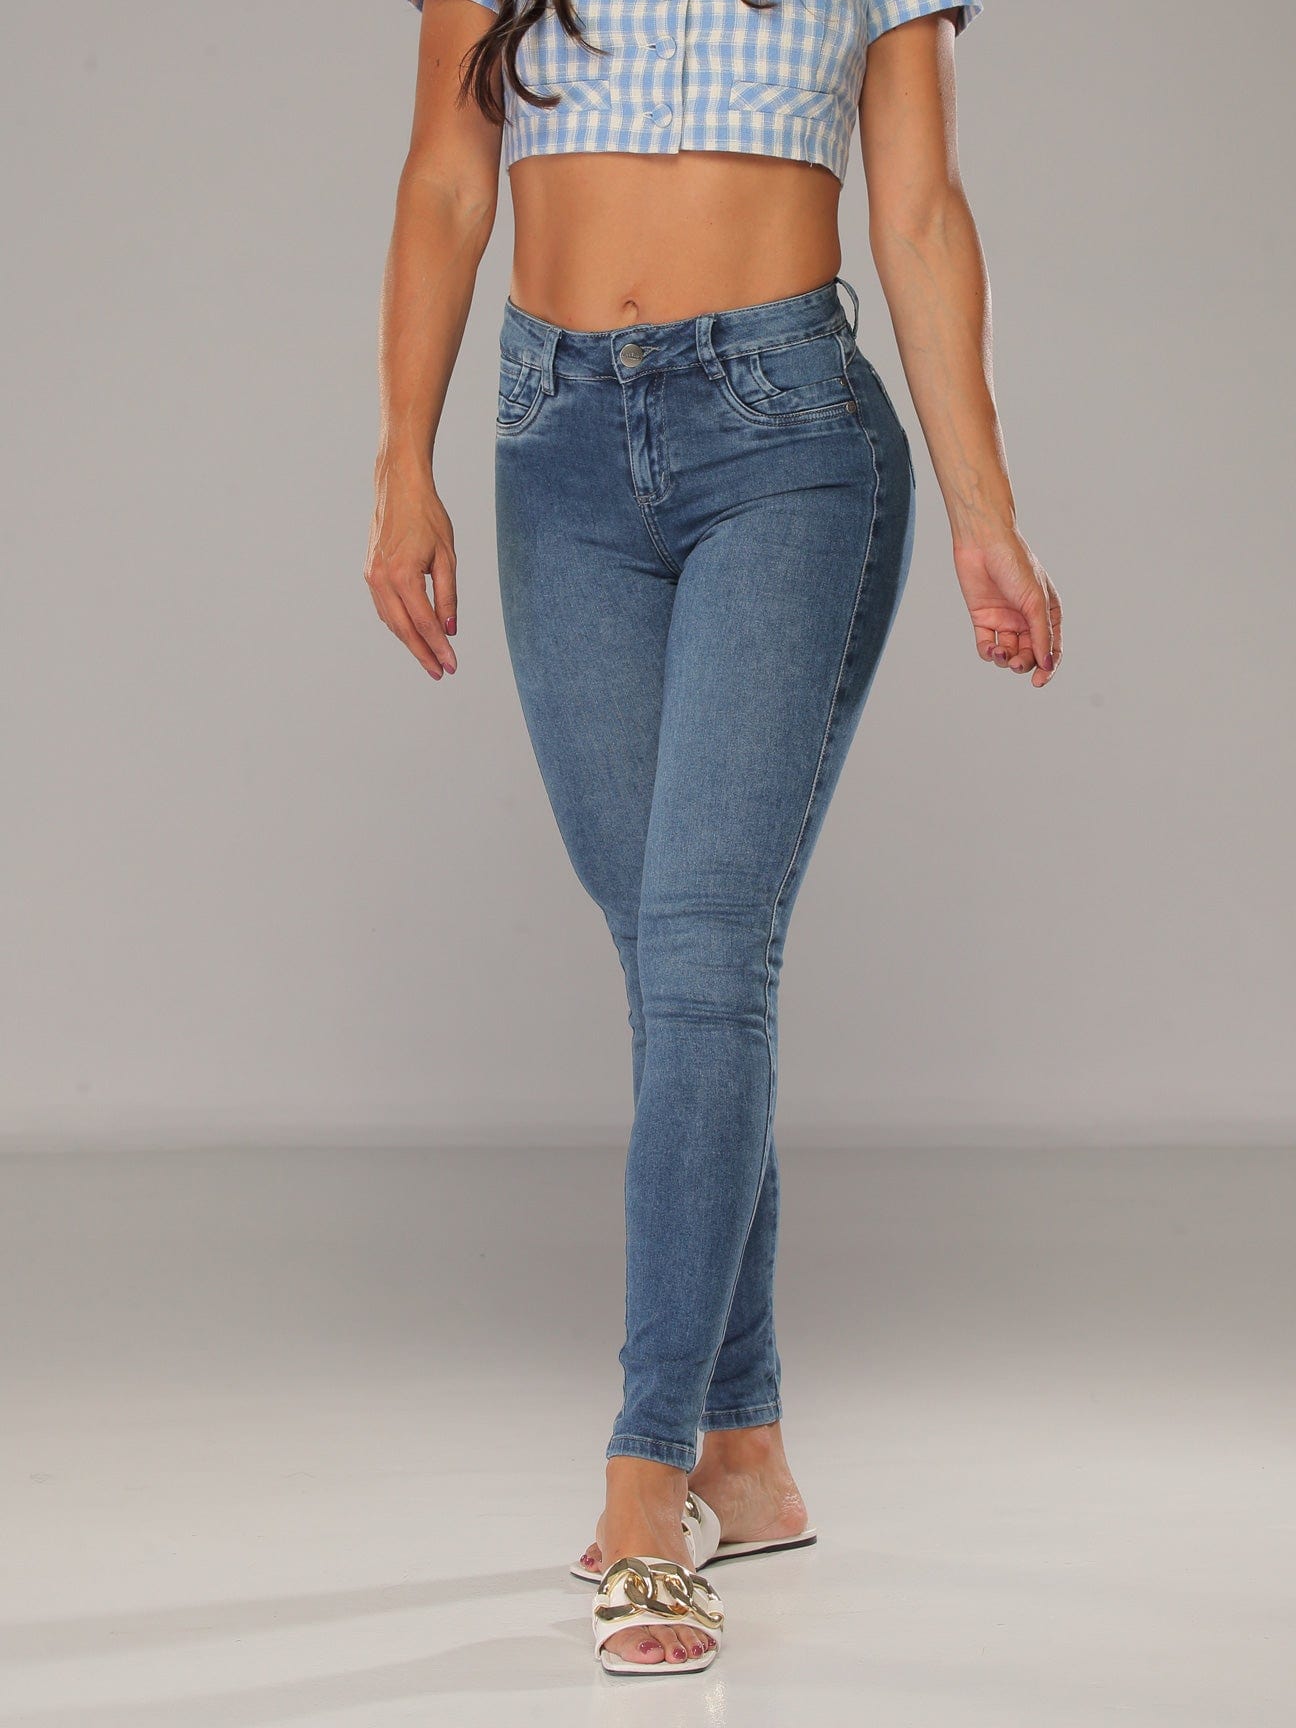 Valink Women Butt Lift Plus-Size Denim Jeans Luxe Stretch High